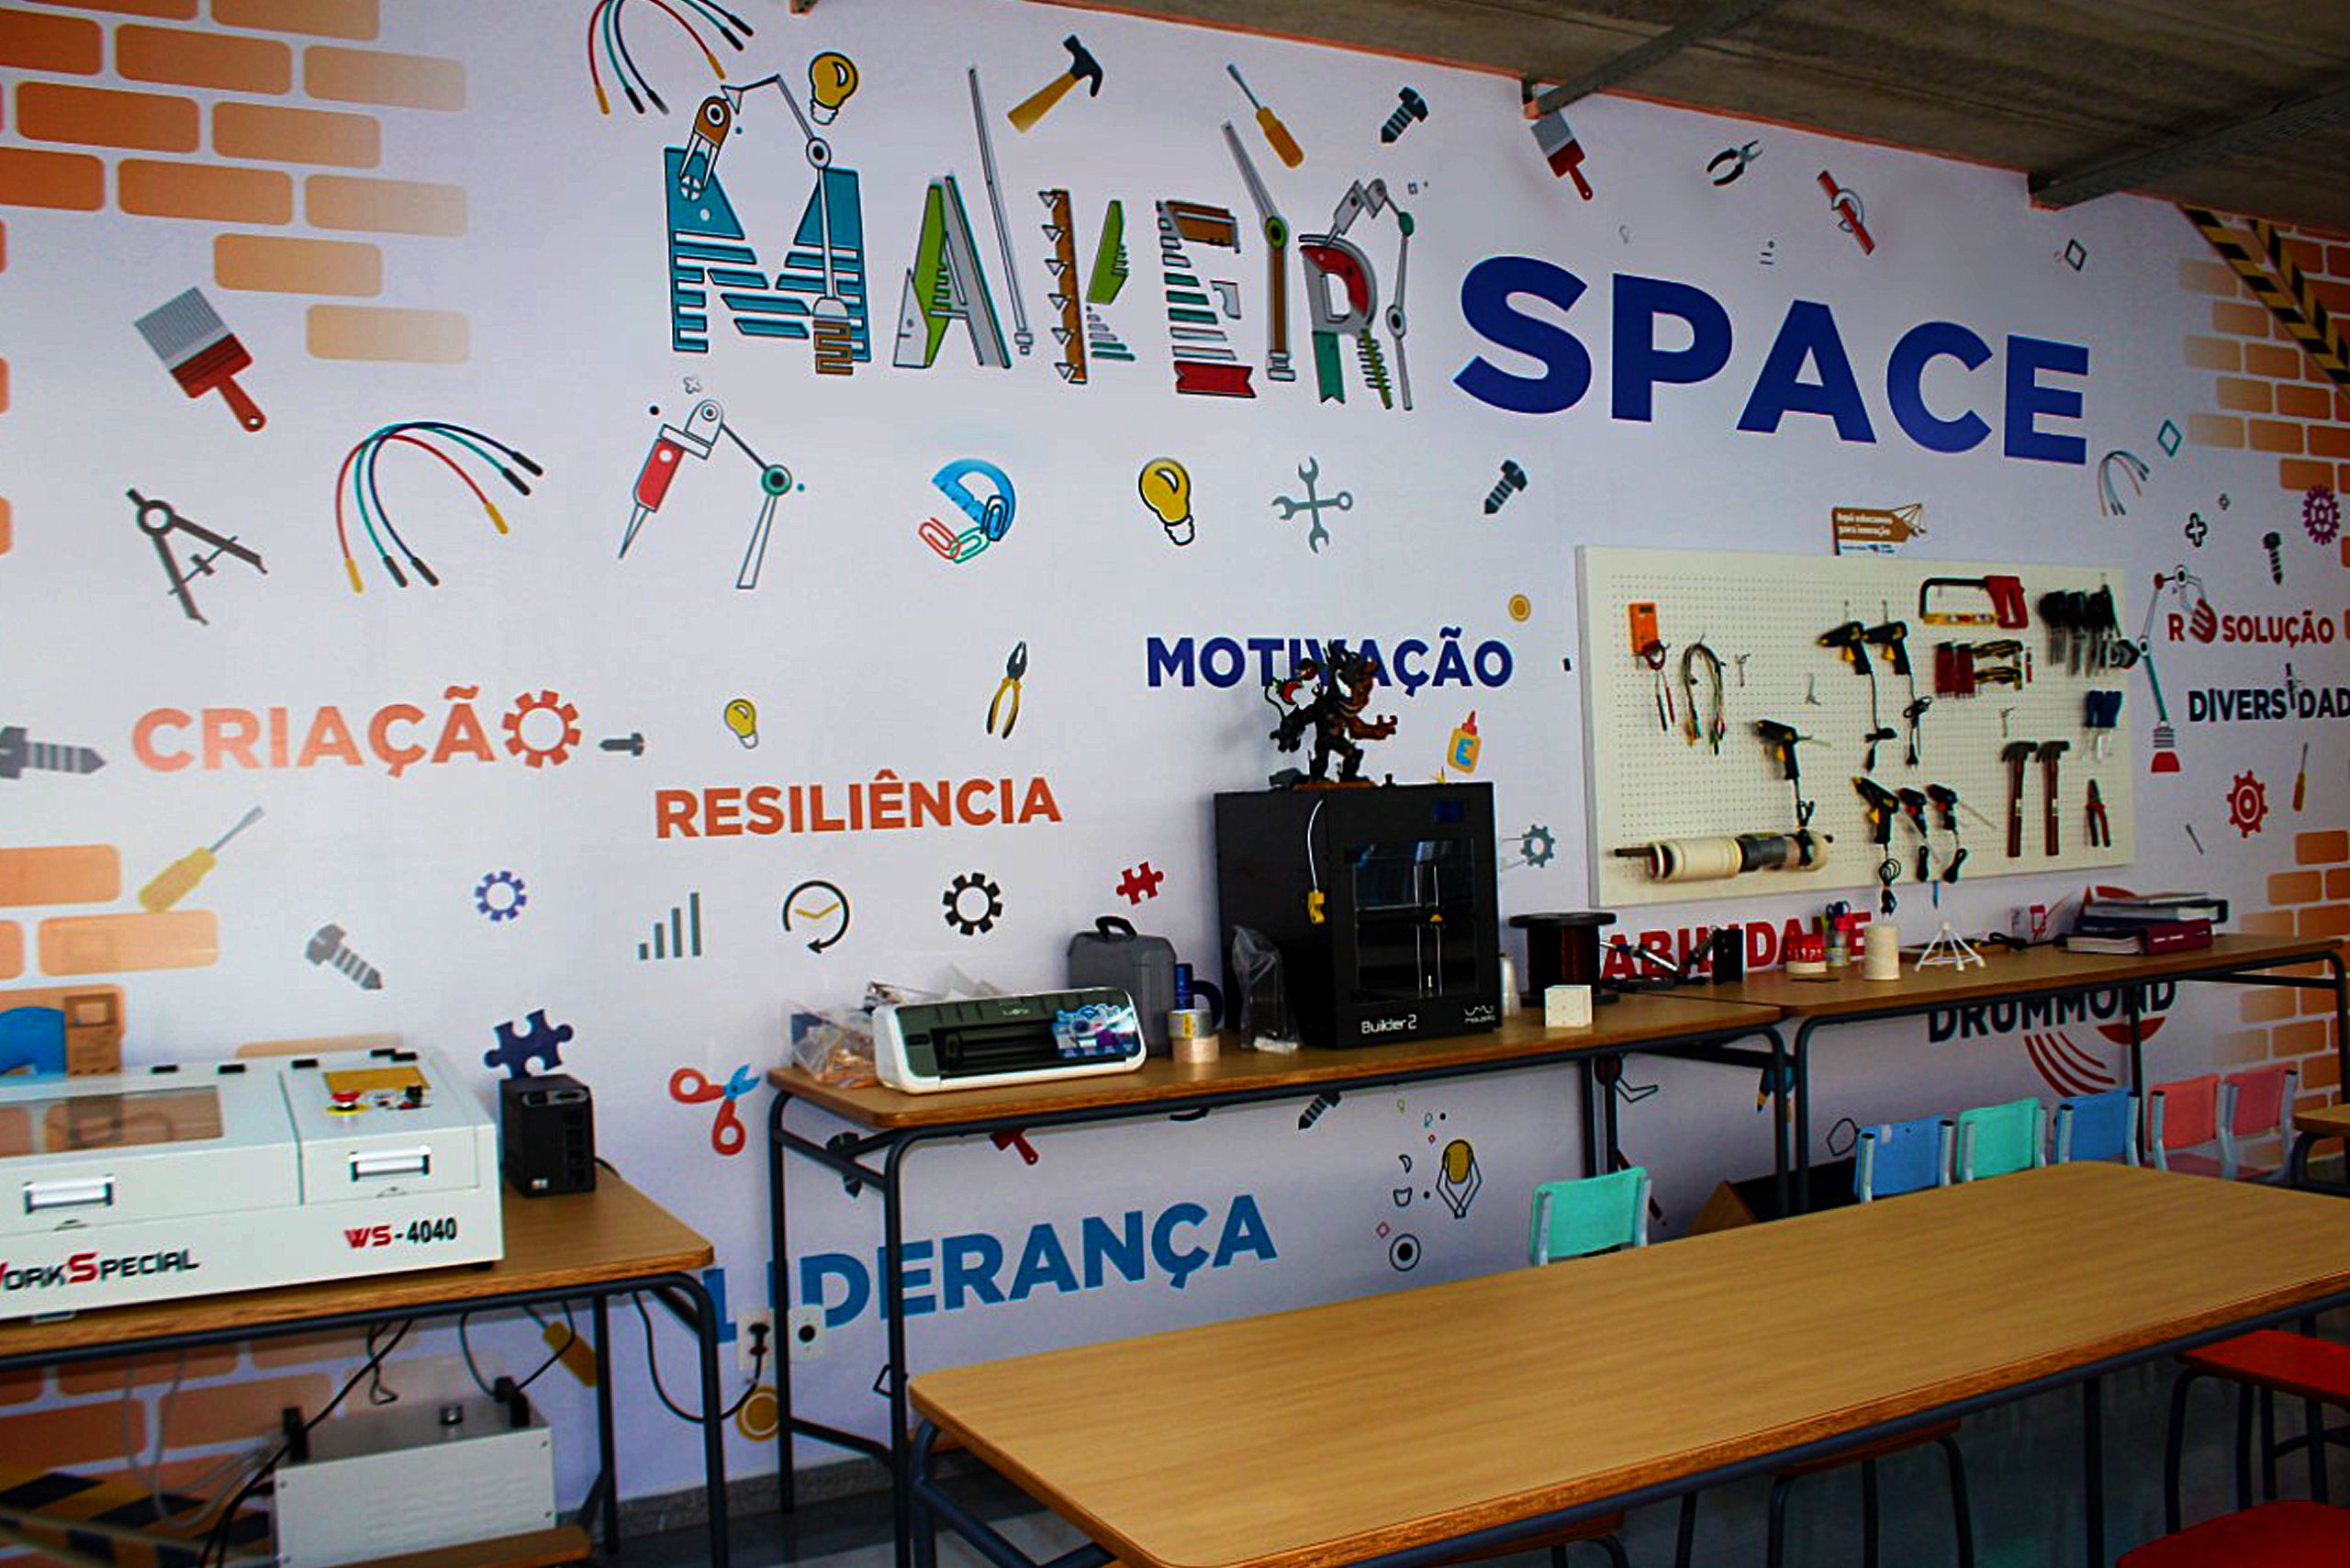 Cultura maker cresce no país com maior conexão à internet - Bem Paraná